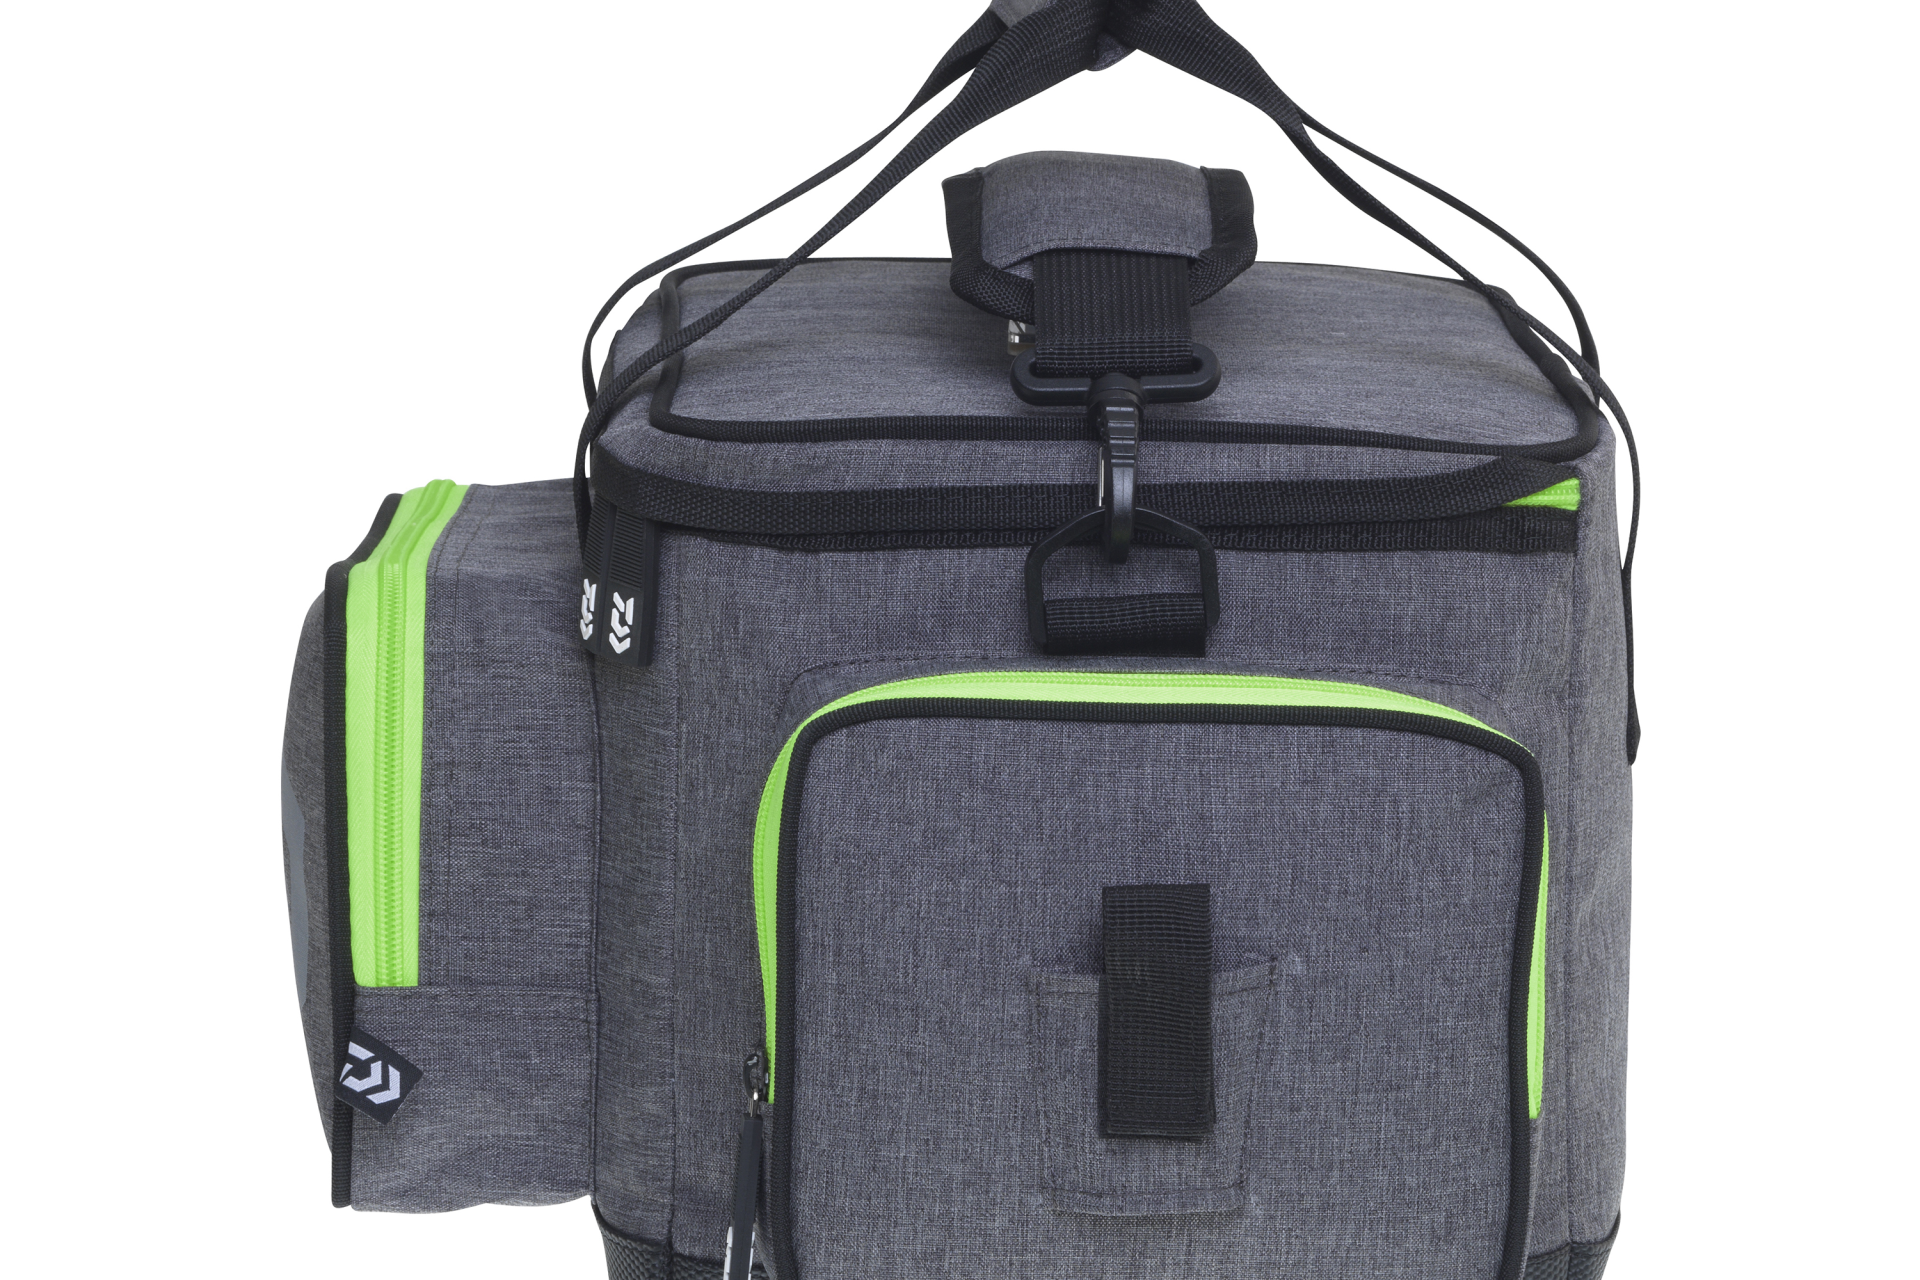 Prorex D-Box Tackle Bag <span>| Torba na przynęty / sprzęt | Rozmiar M</span>